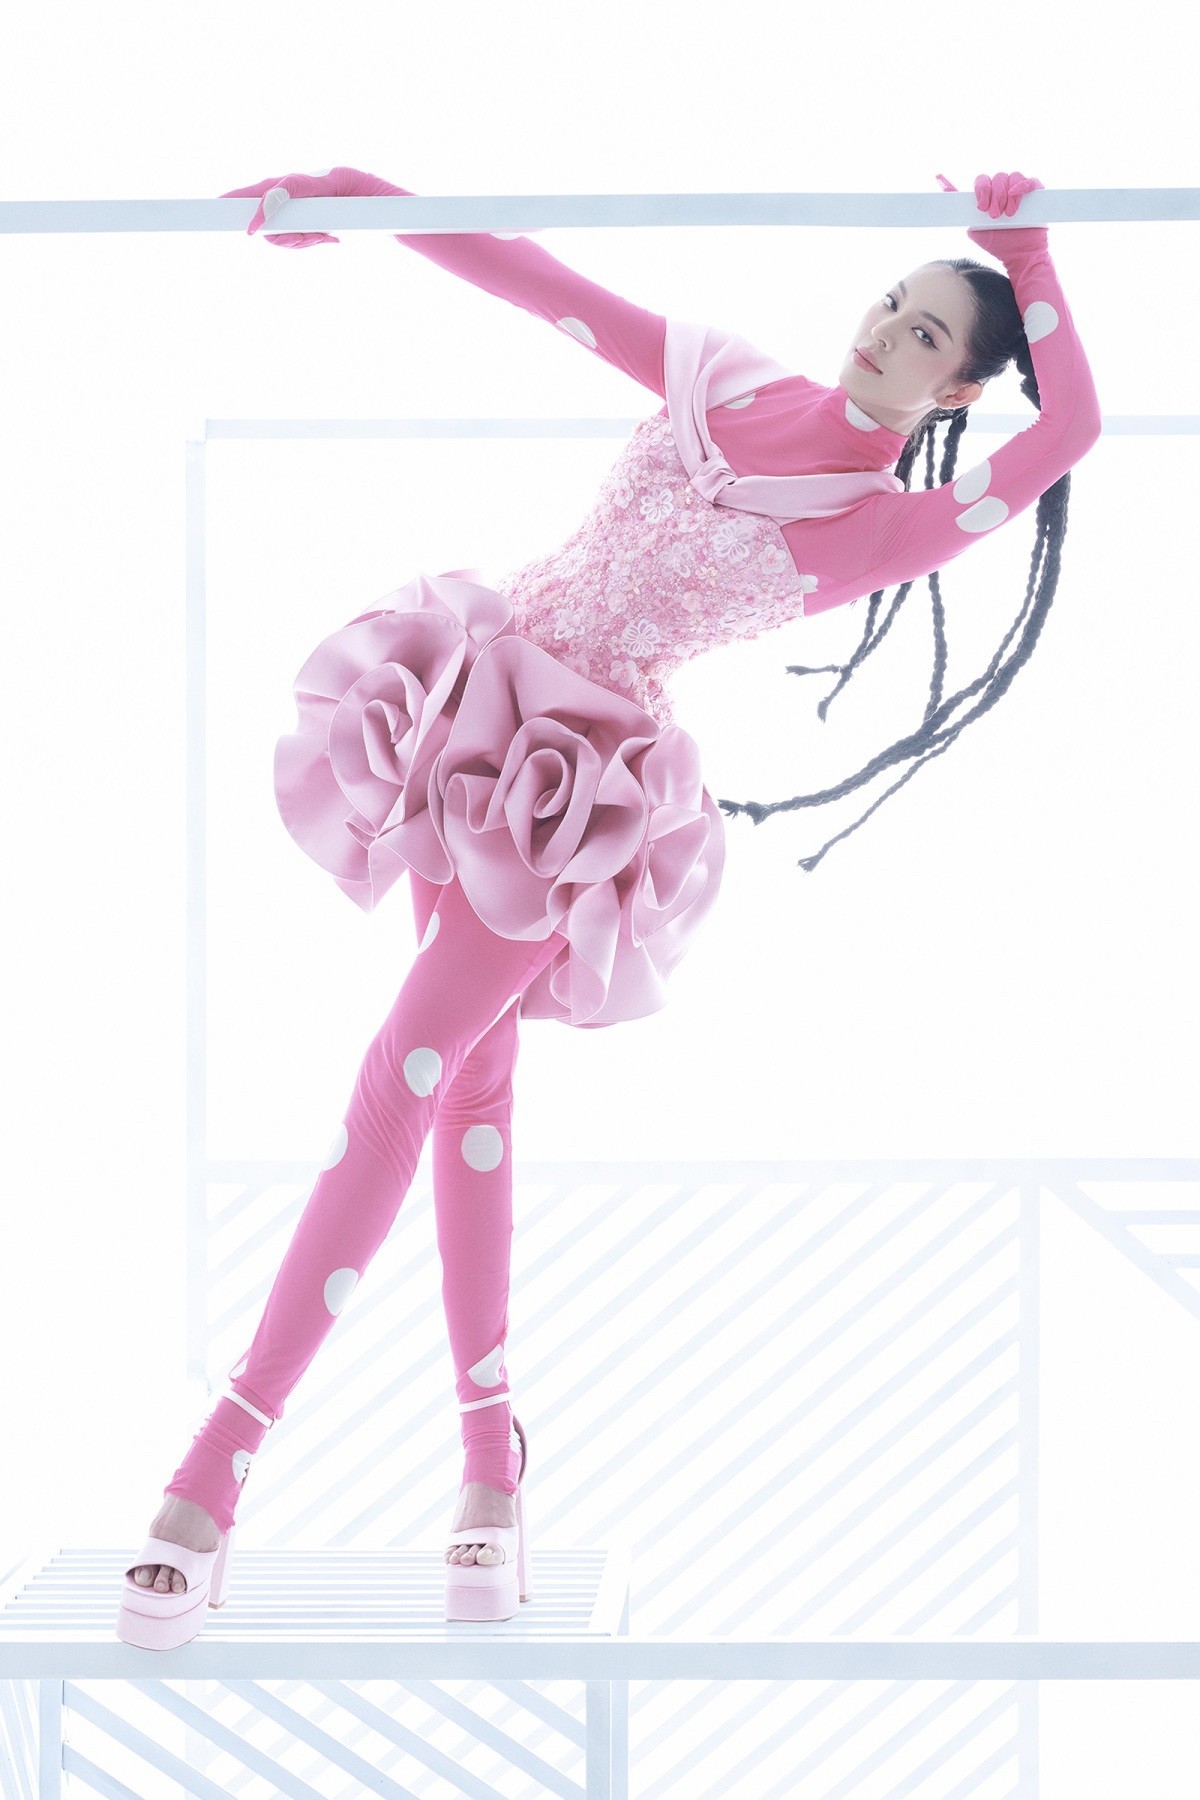 Ngắm siêu mẫu Thanh Hằng và dàn người đẹp đáng yêu trong bộ ảnh thời trang tông hồng ngọt ngào